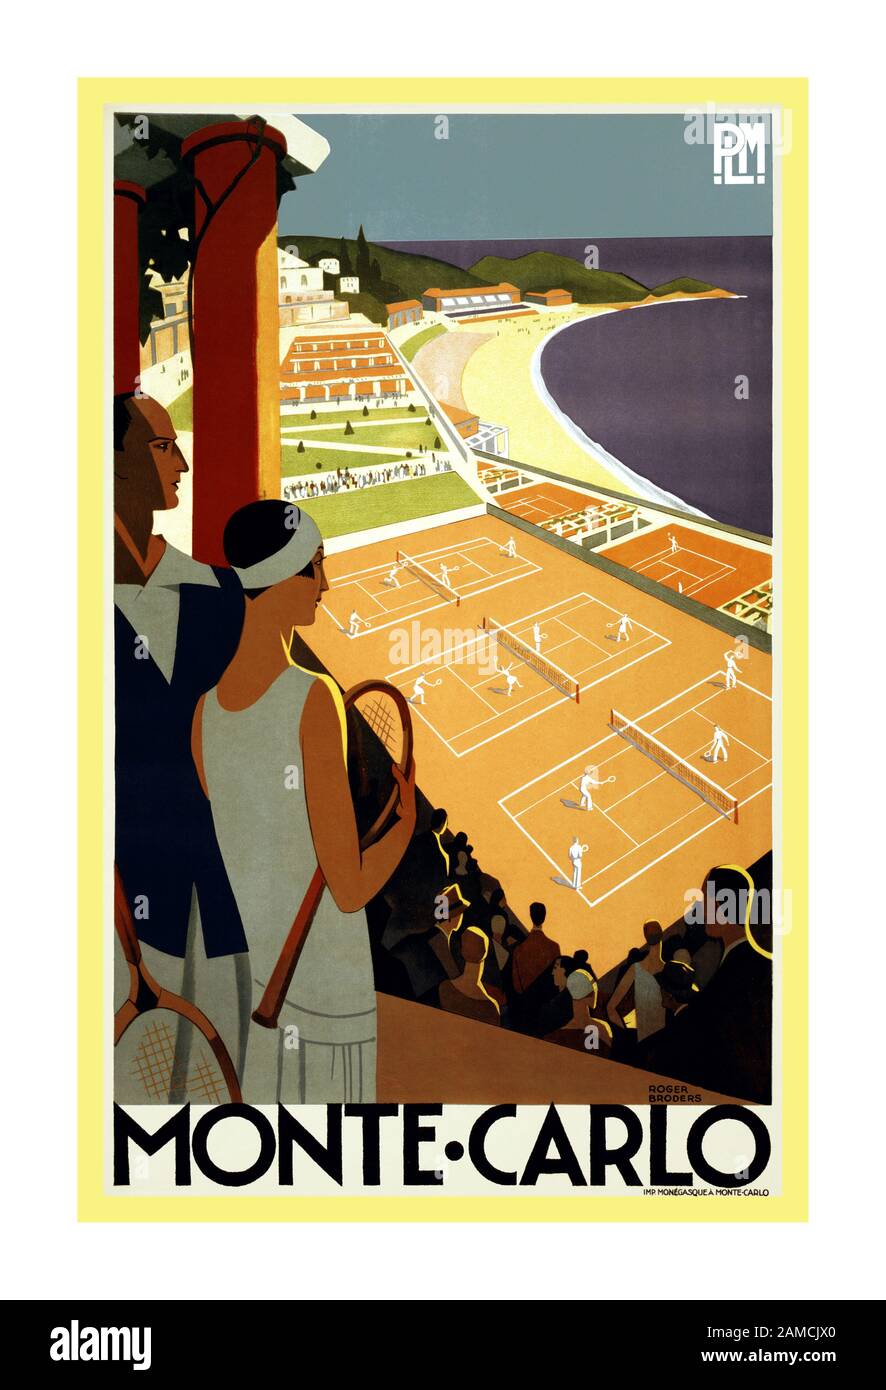 Monte-Carlo degli anni '30, poster di viaggio per PLM, ca. 1930 Monte-Carlo. Poster di viaggio di Roger Broders mostra una coppia guardando i giochi di tennis vicino al Mediterraneo. Litografia di Imp. Monegasques, Monte Carlo, Ca. 1930. Foto Stock